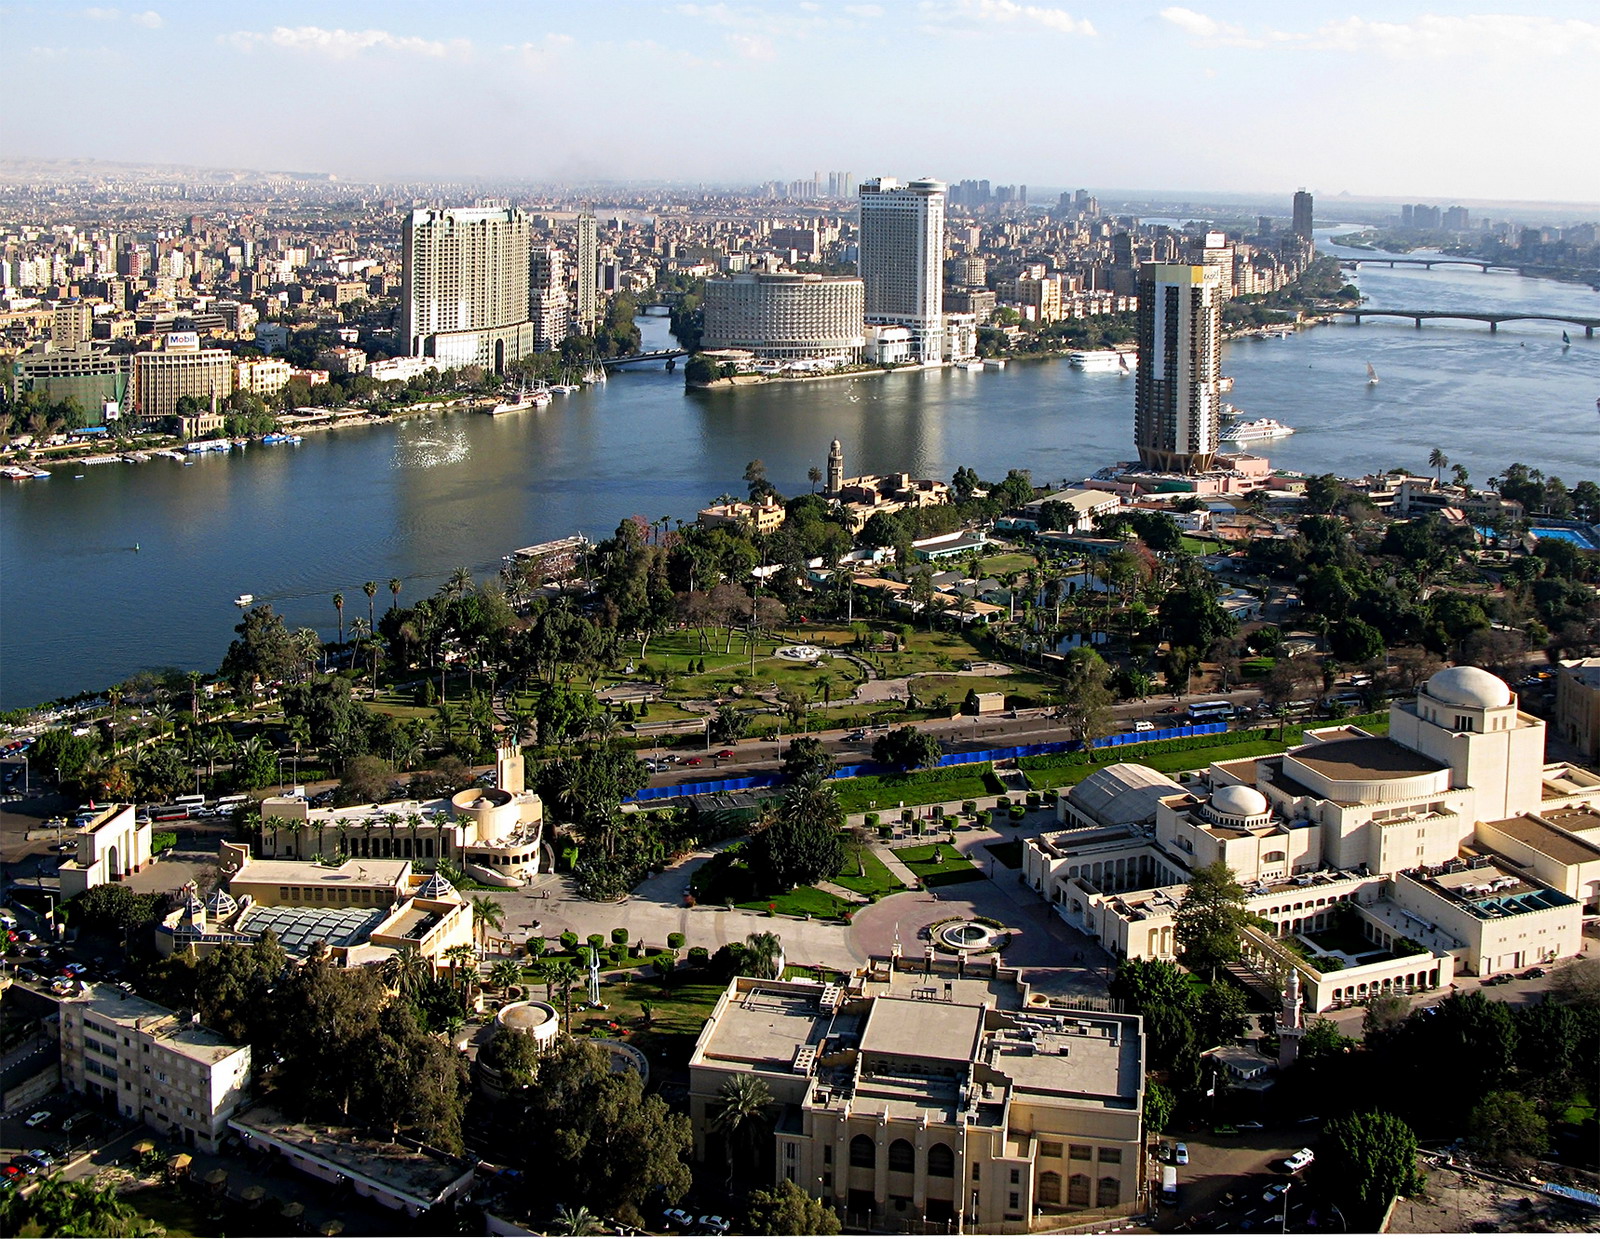 Hamarosan megtudjuk, hol lesz Egyiptom új fővárosa